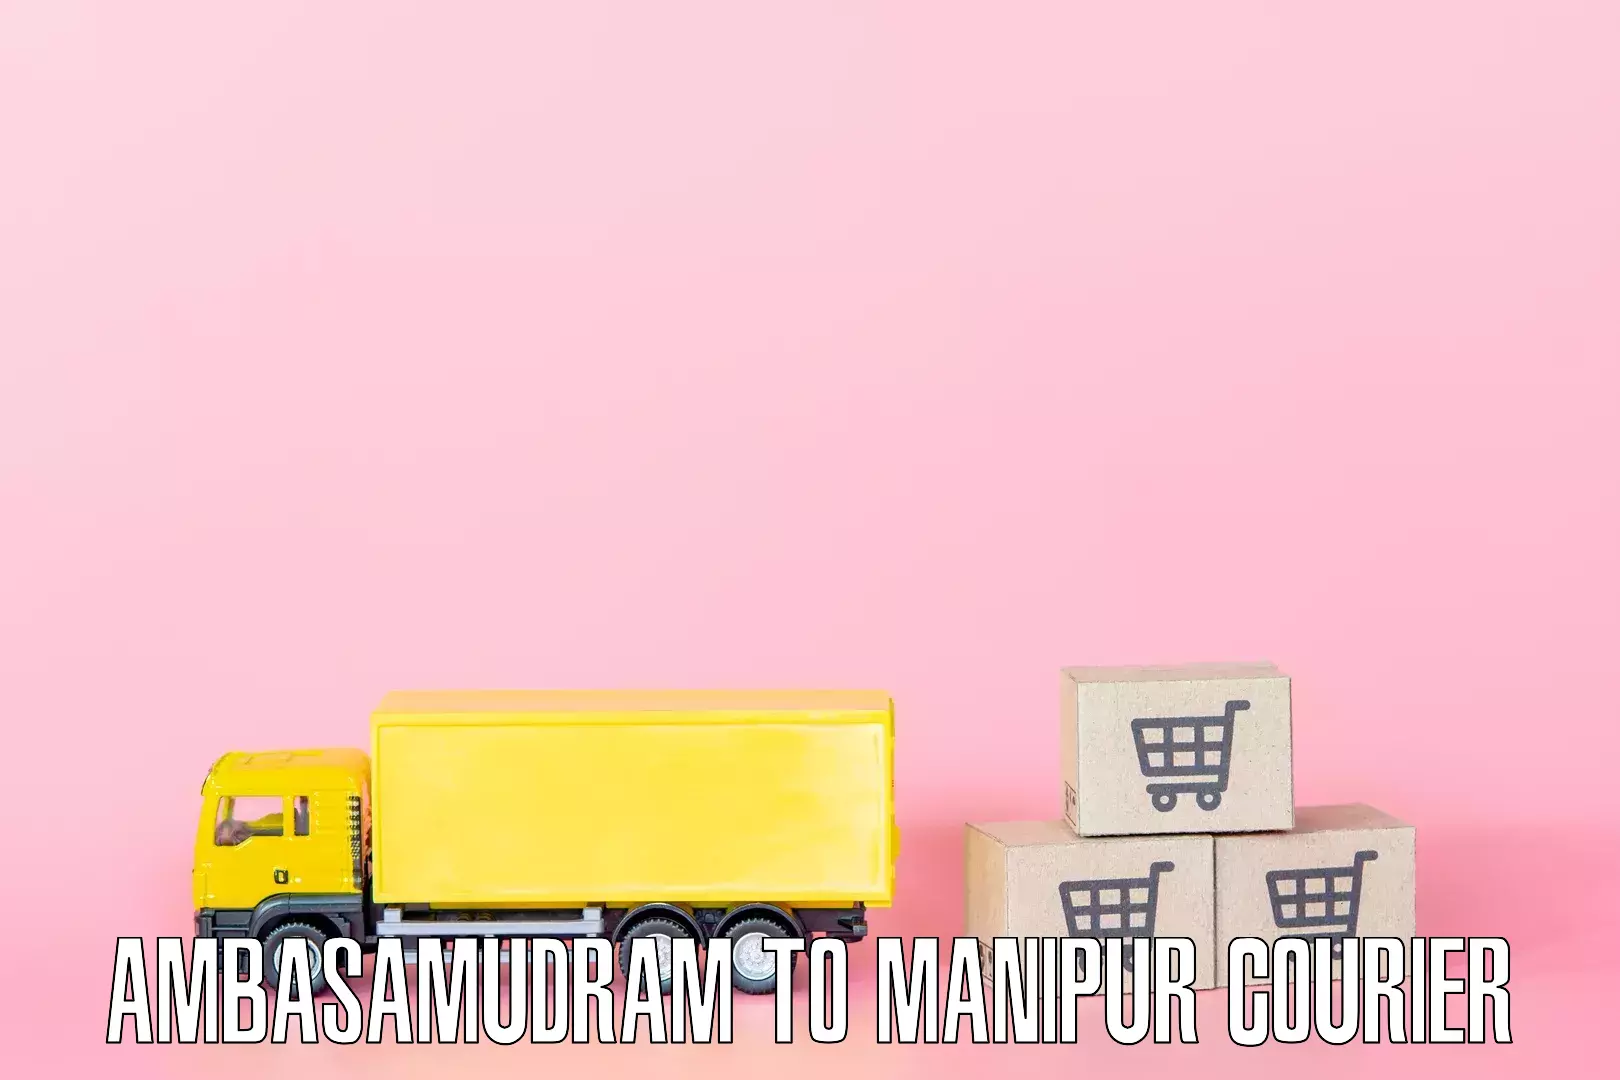 Quality furniture shipping Ambasamudram to Imphal